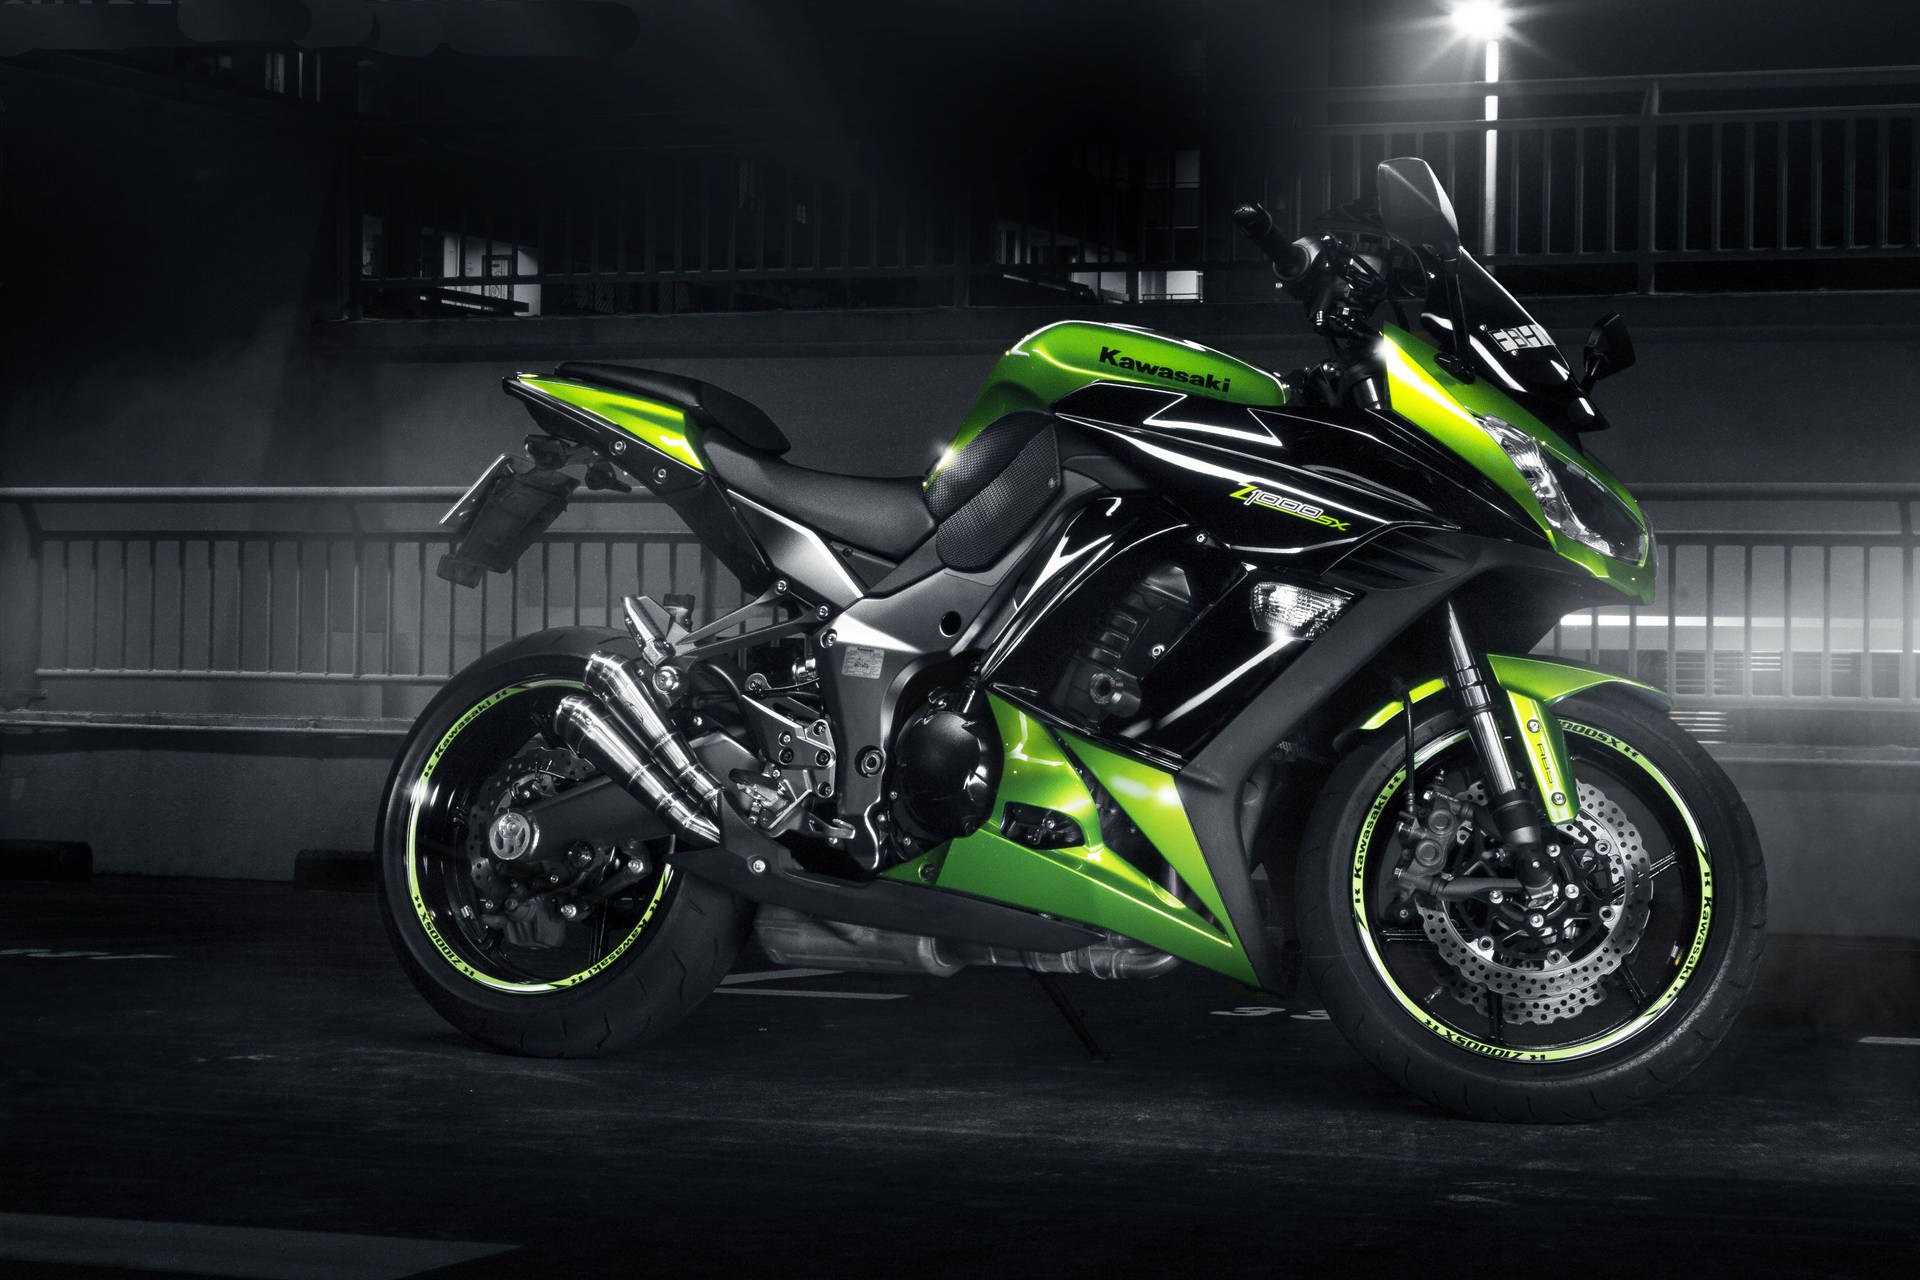 Neon Green And Black Kawasaki H2r